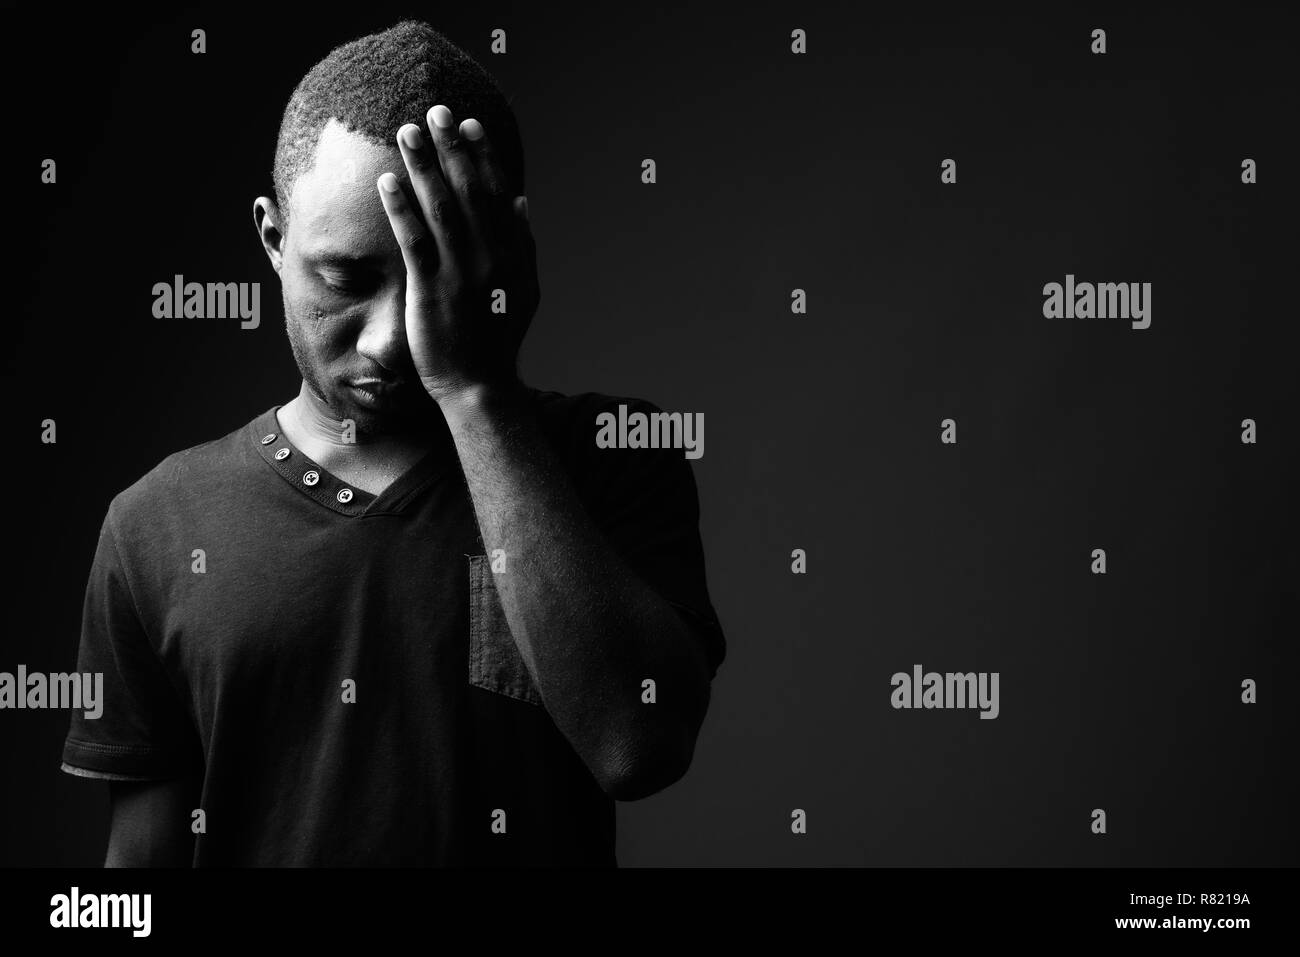 Los frustrados jóvenes hombre africano tener dolor de cabeza en blanco y negro Foto de stock